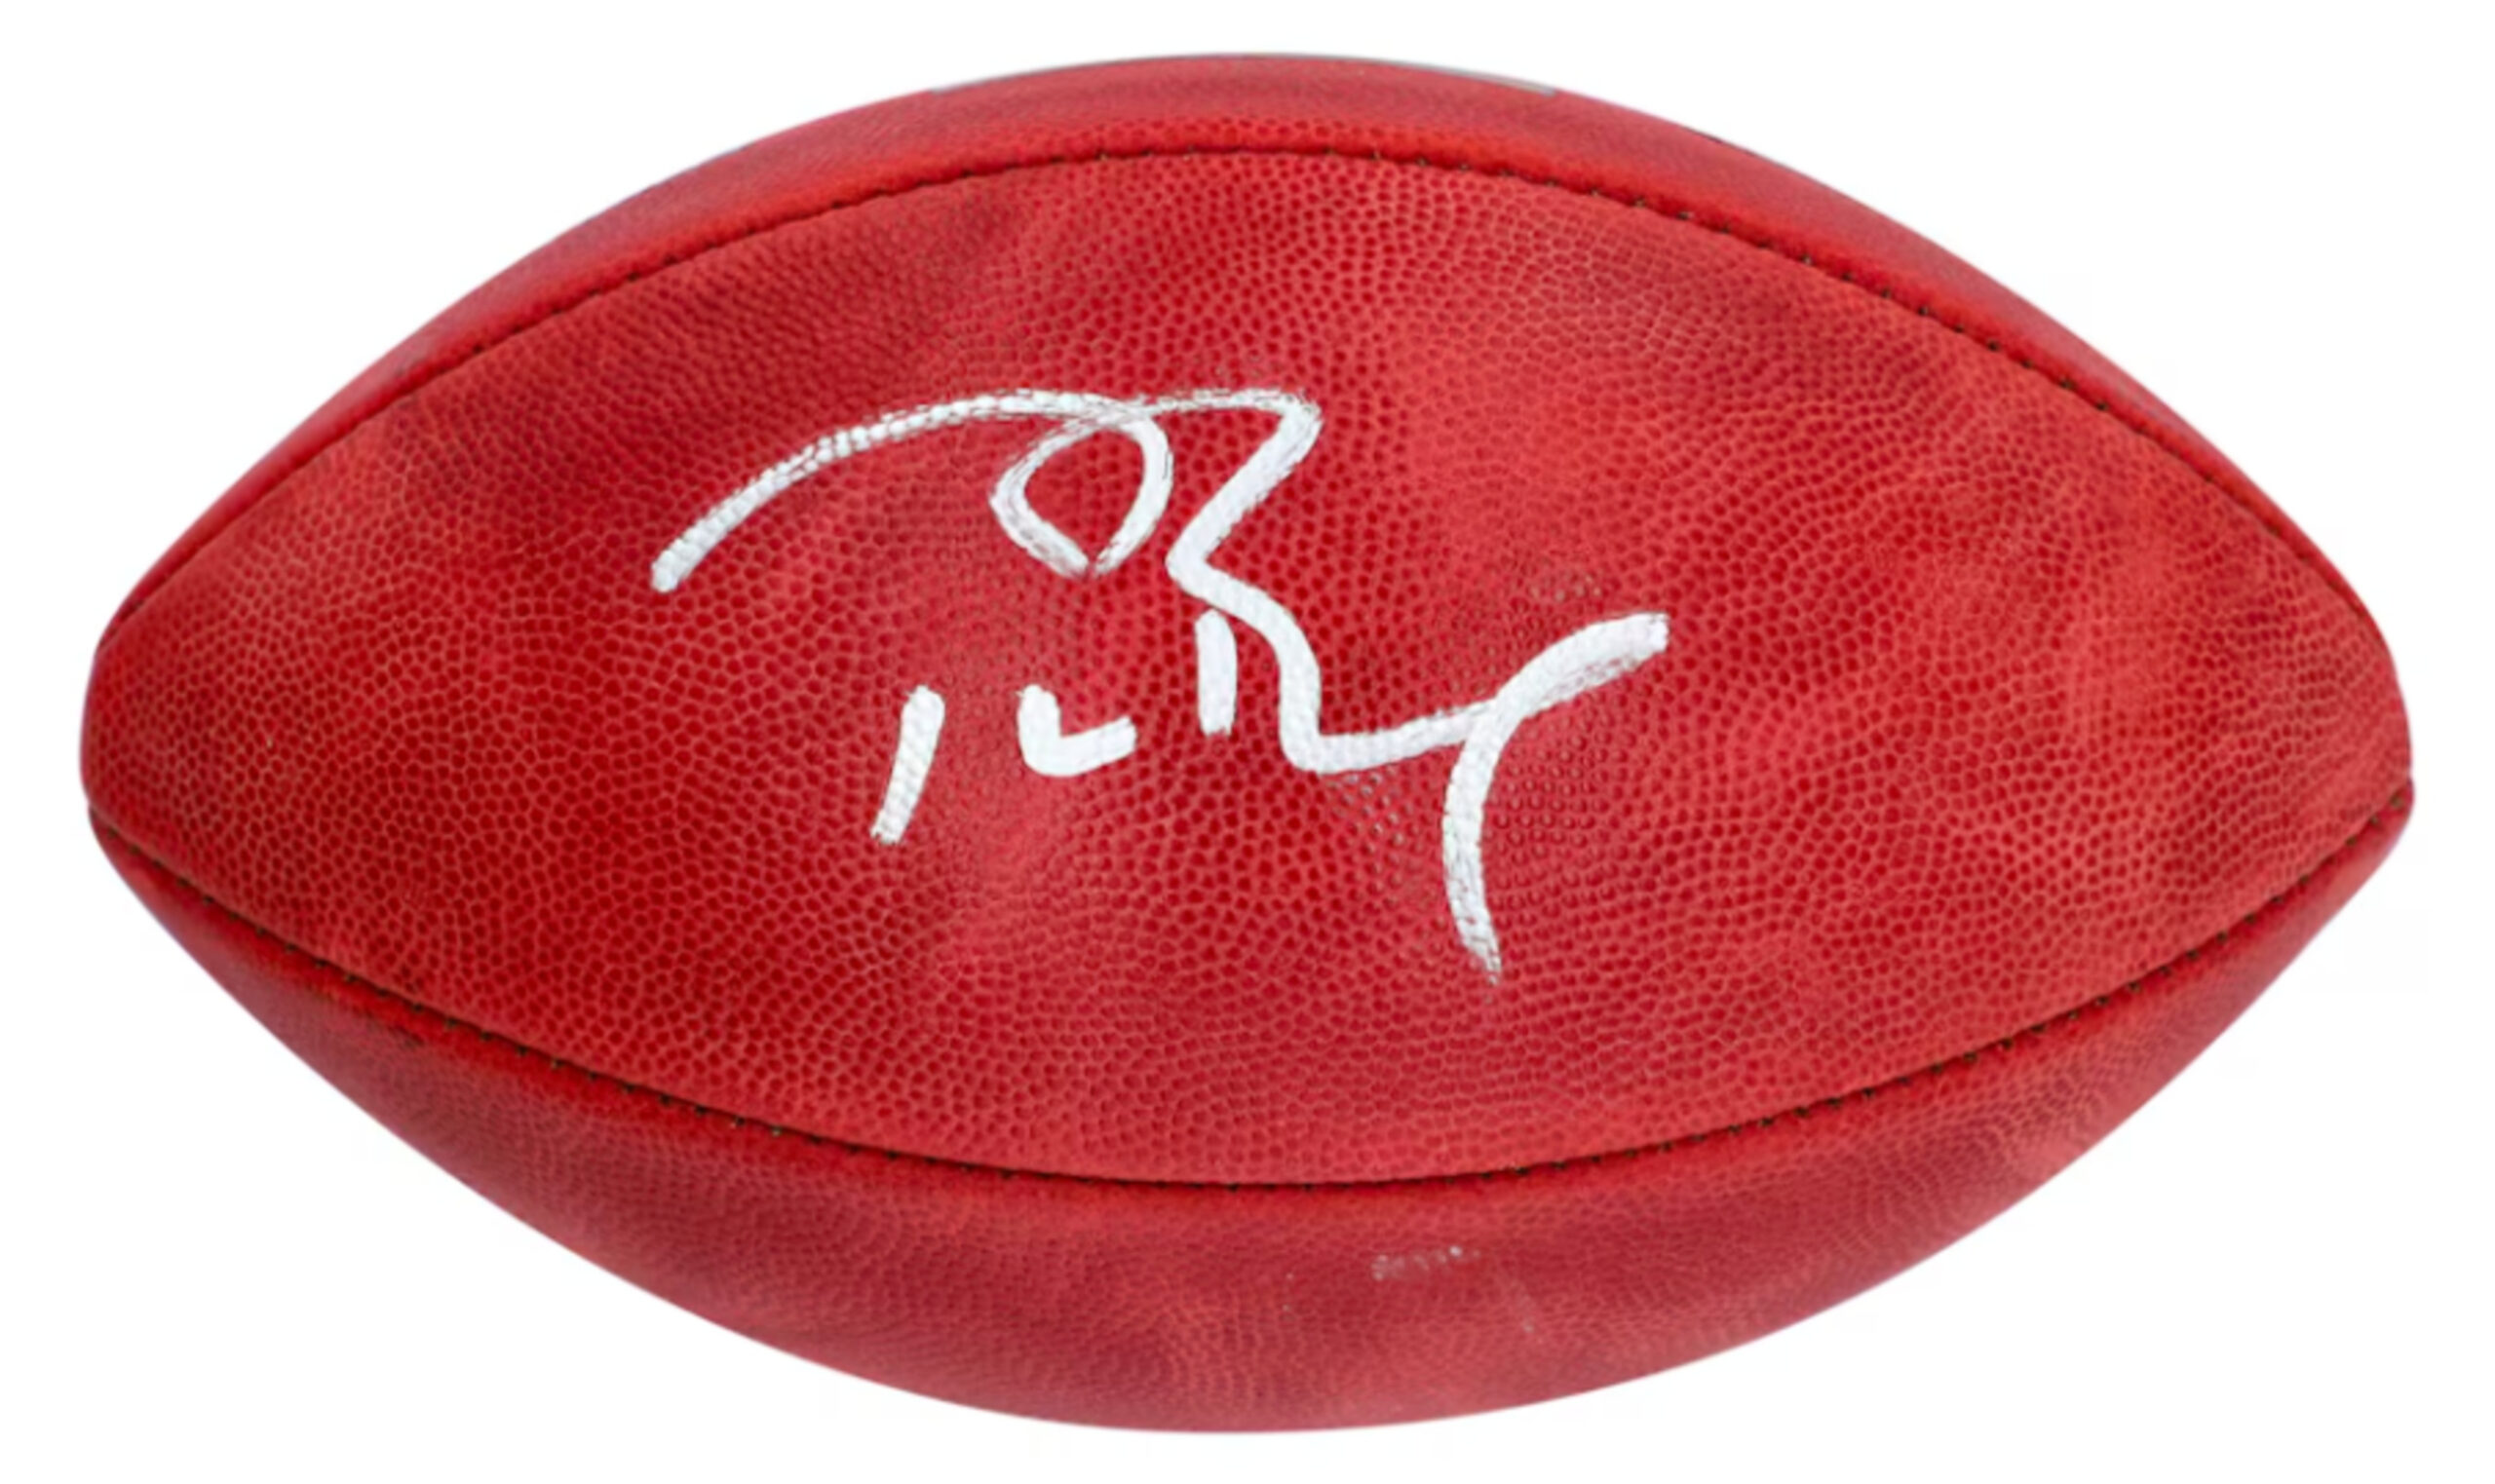 Tom Brady autographed football